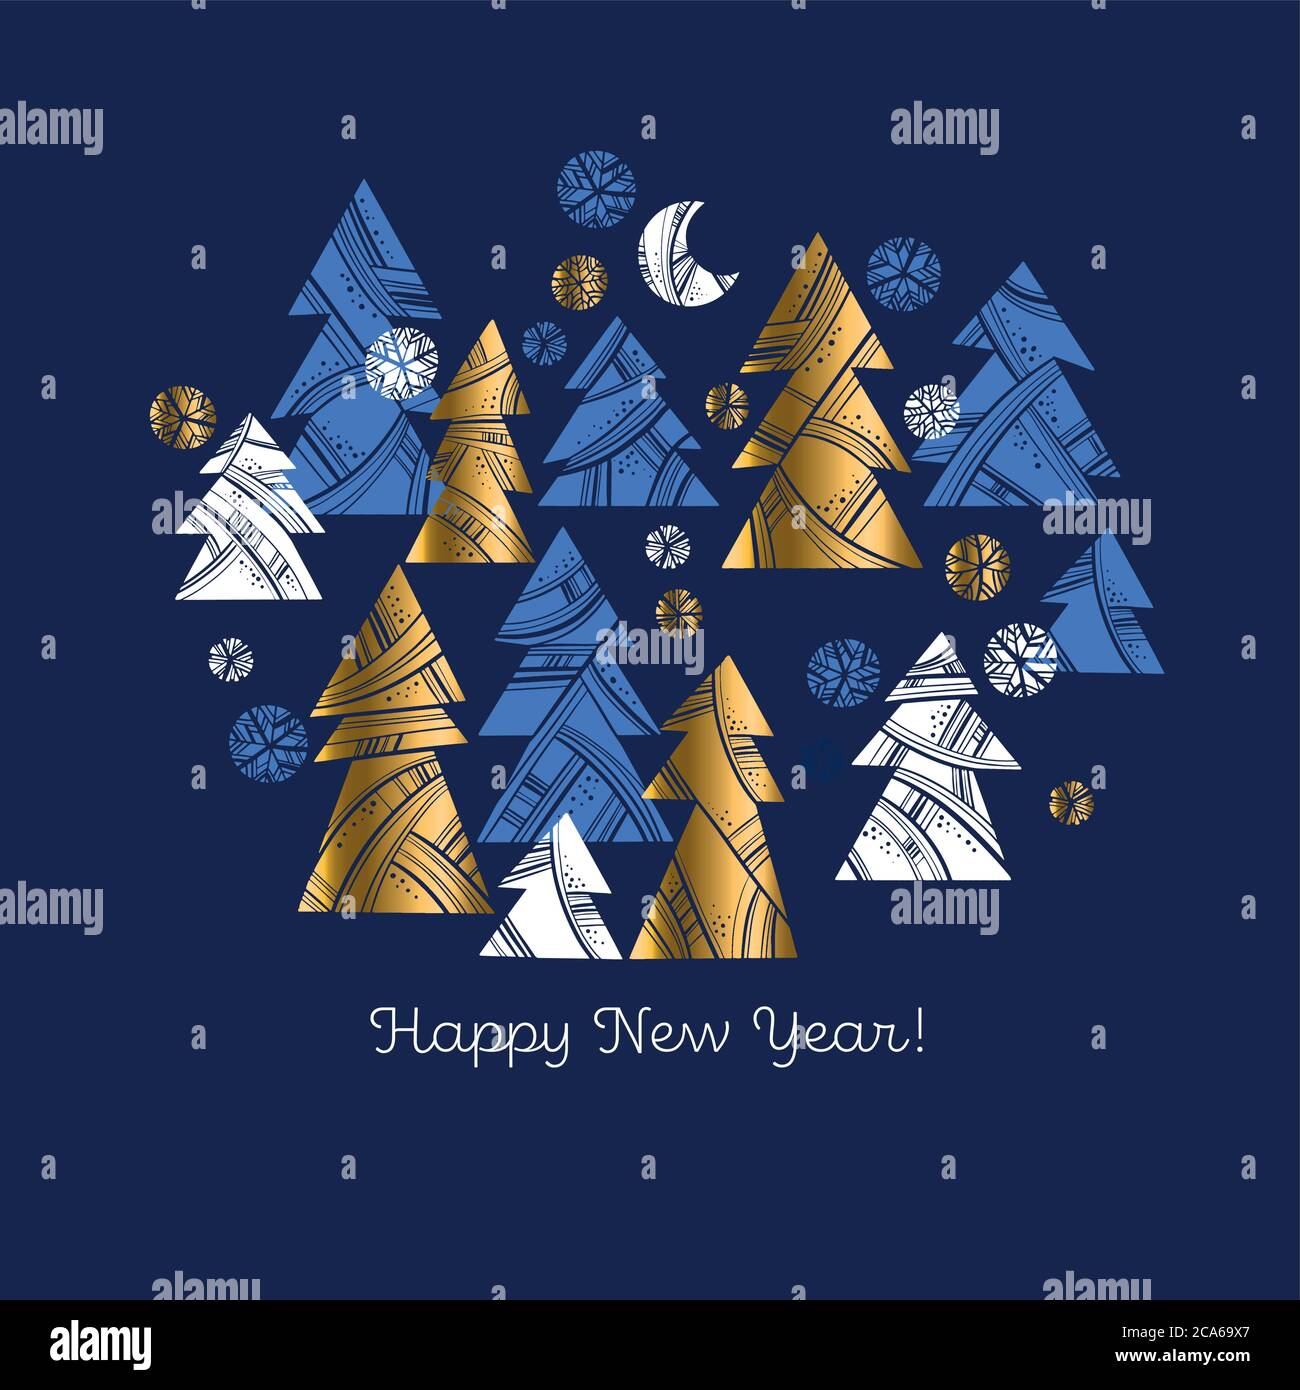 Einfache geometrische Gold und blau Weihnachtsbaum Zusammensetzung für Karte, Header, Einladung, Poster, Social Media, Post-Veröffentlichung. Moderne, trendige runde Formen Stock Vektor